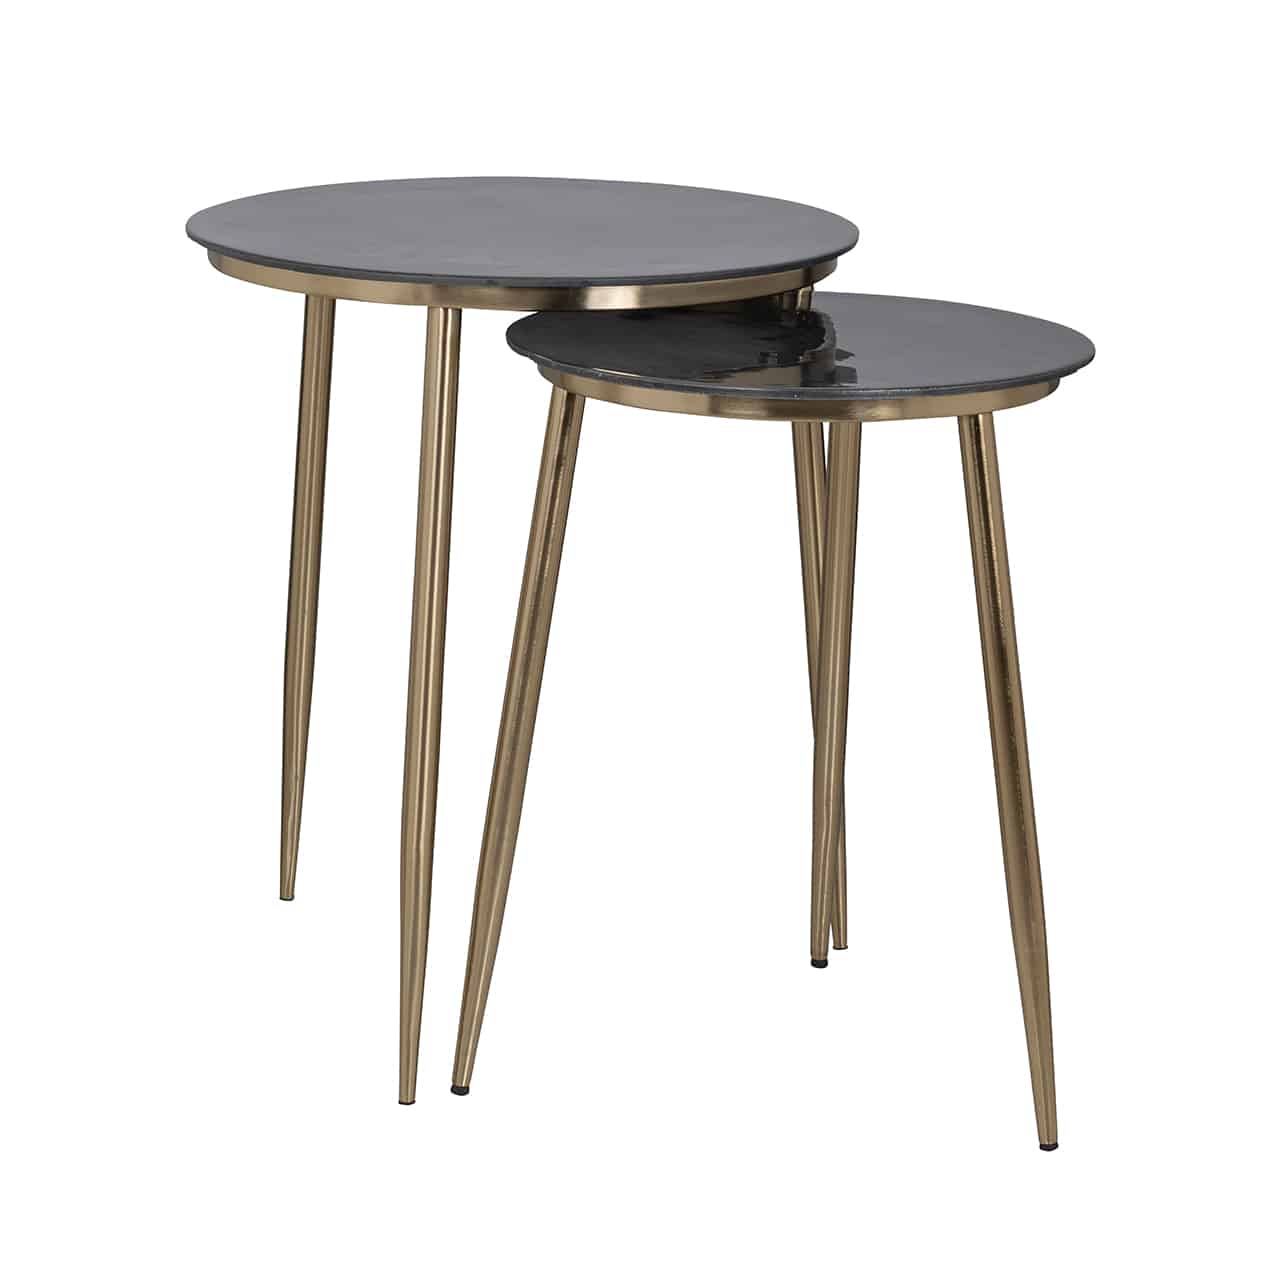 Beistelltisch 2er-Set, bestehend aus zwei runden Tischen verschiedener Größe; jeweils mit drei konischen, goldenen Beinen und einer runden Tischplatte in schwarz.